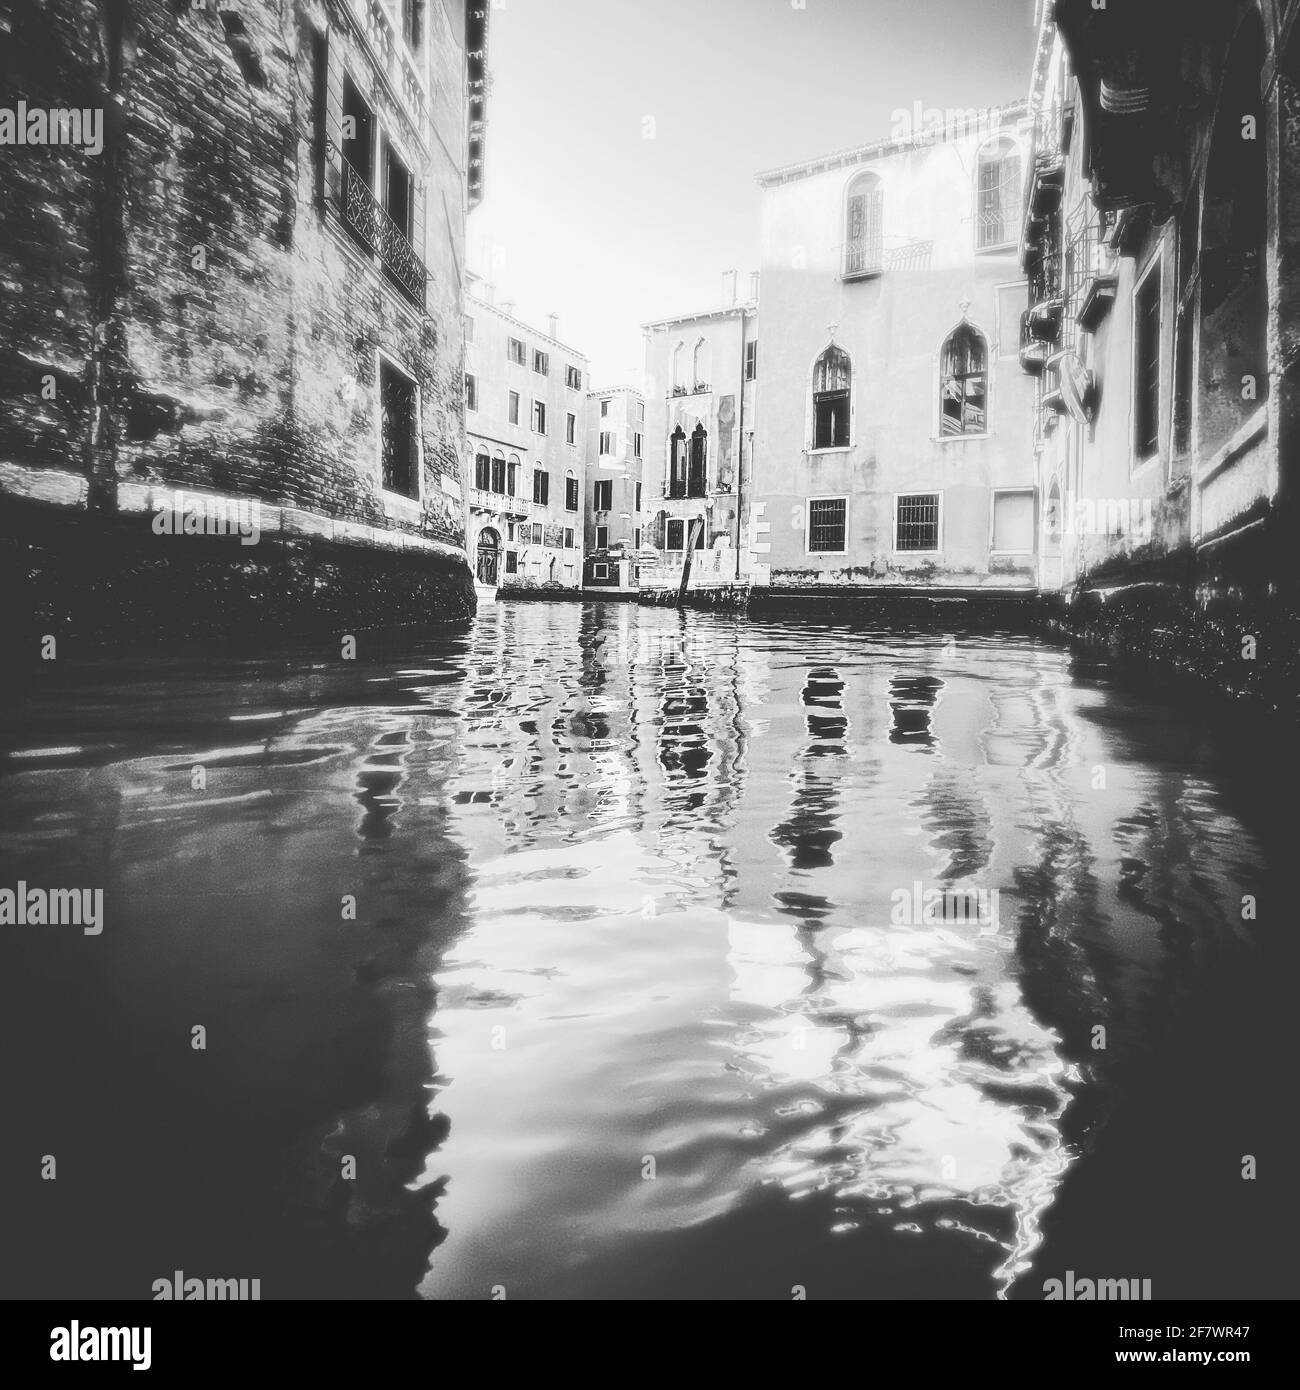 Petit canal coloré à Venise pendant la crise COVID-19, pas de gens Banque D'Images